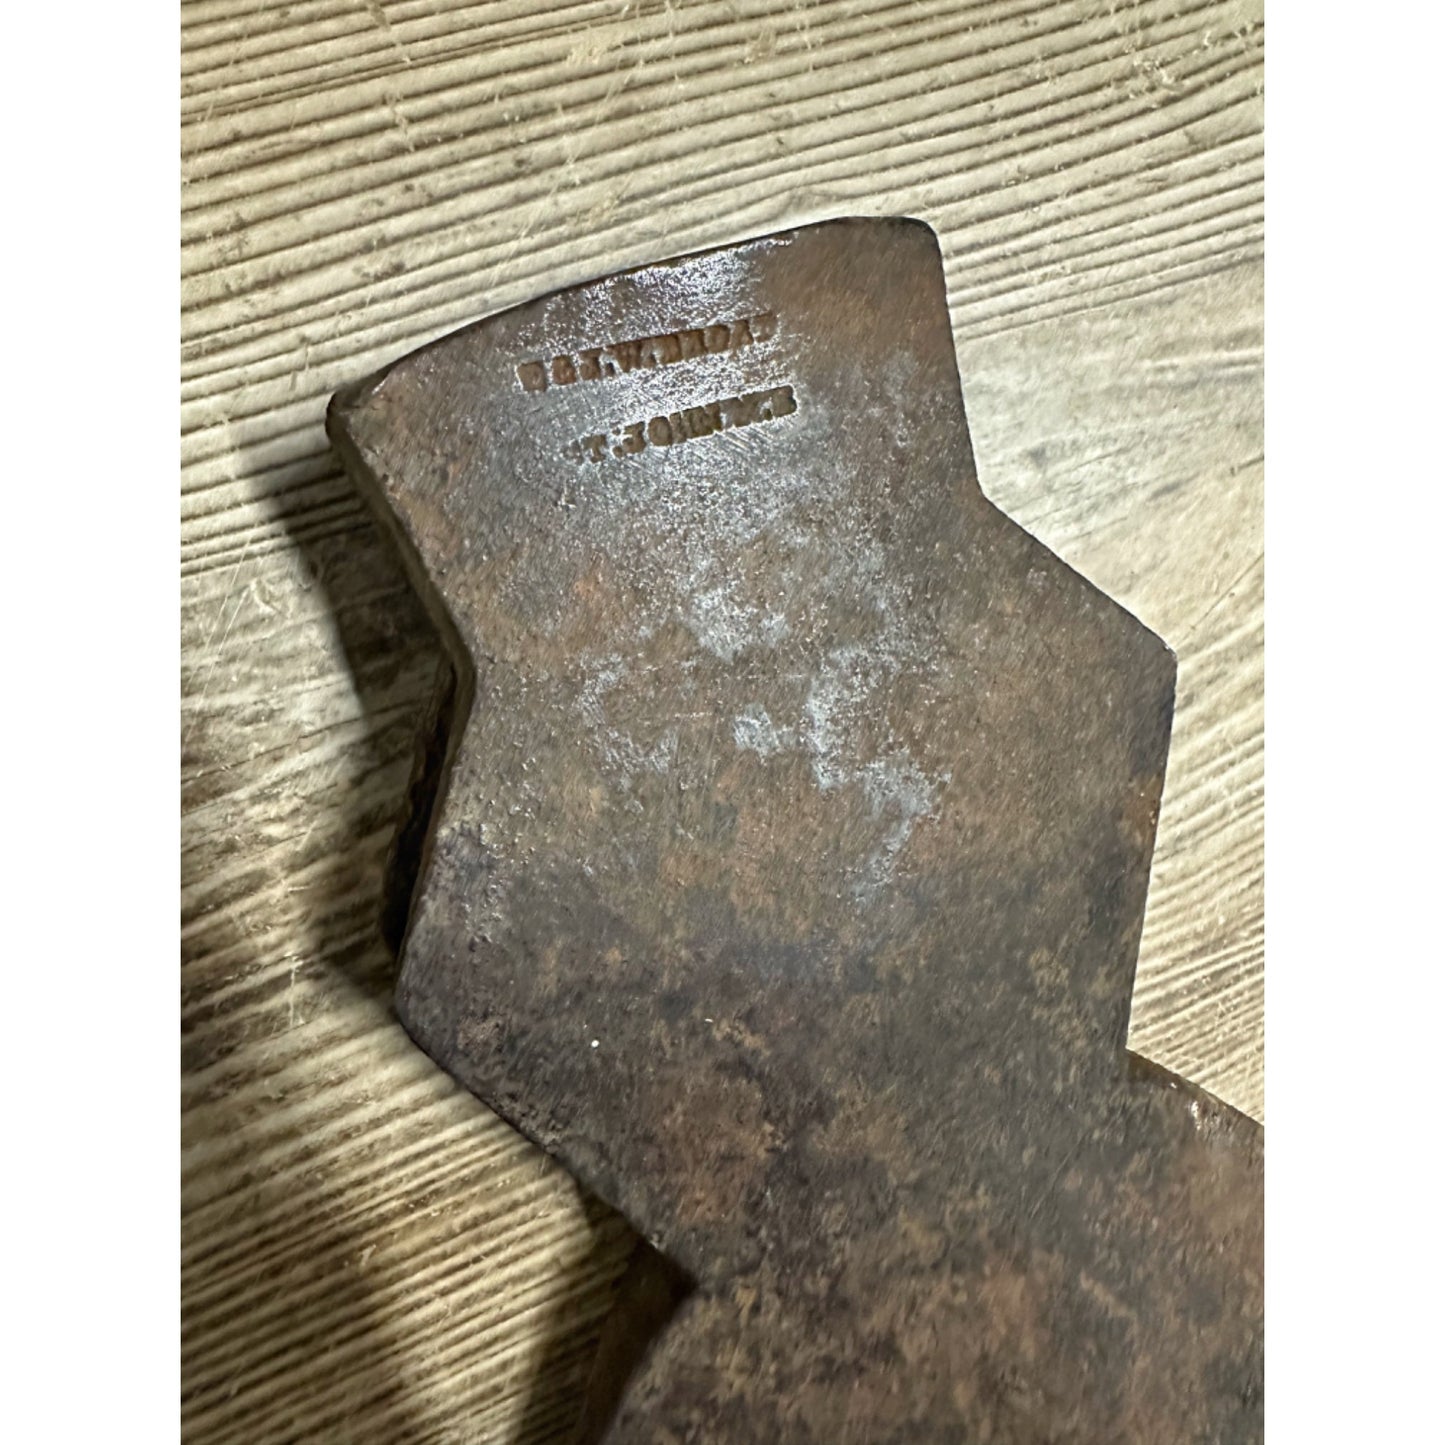 RARE Antique c1857-62 E & J.W. Broad Co. Cast Steel 5lb Broad New Brunswick Canada